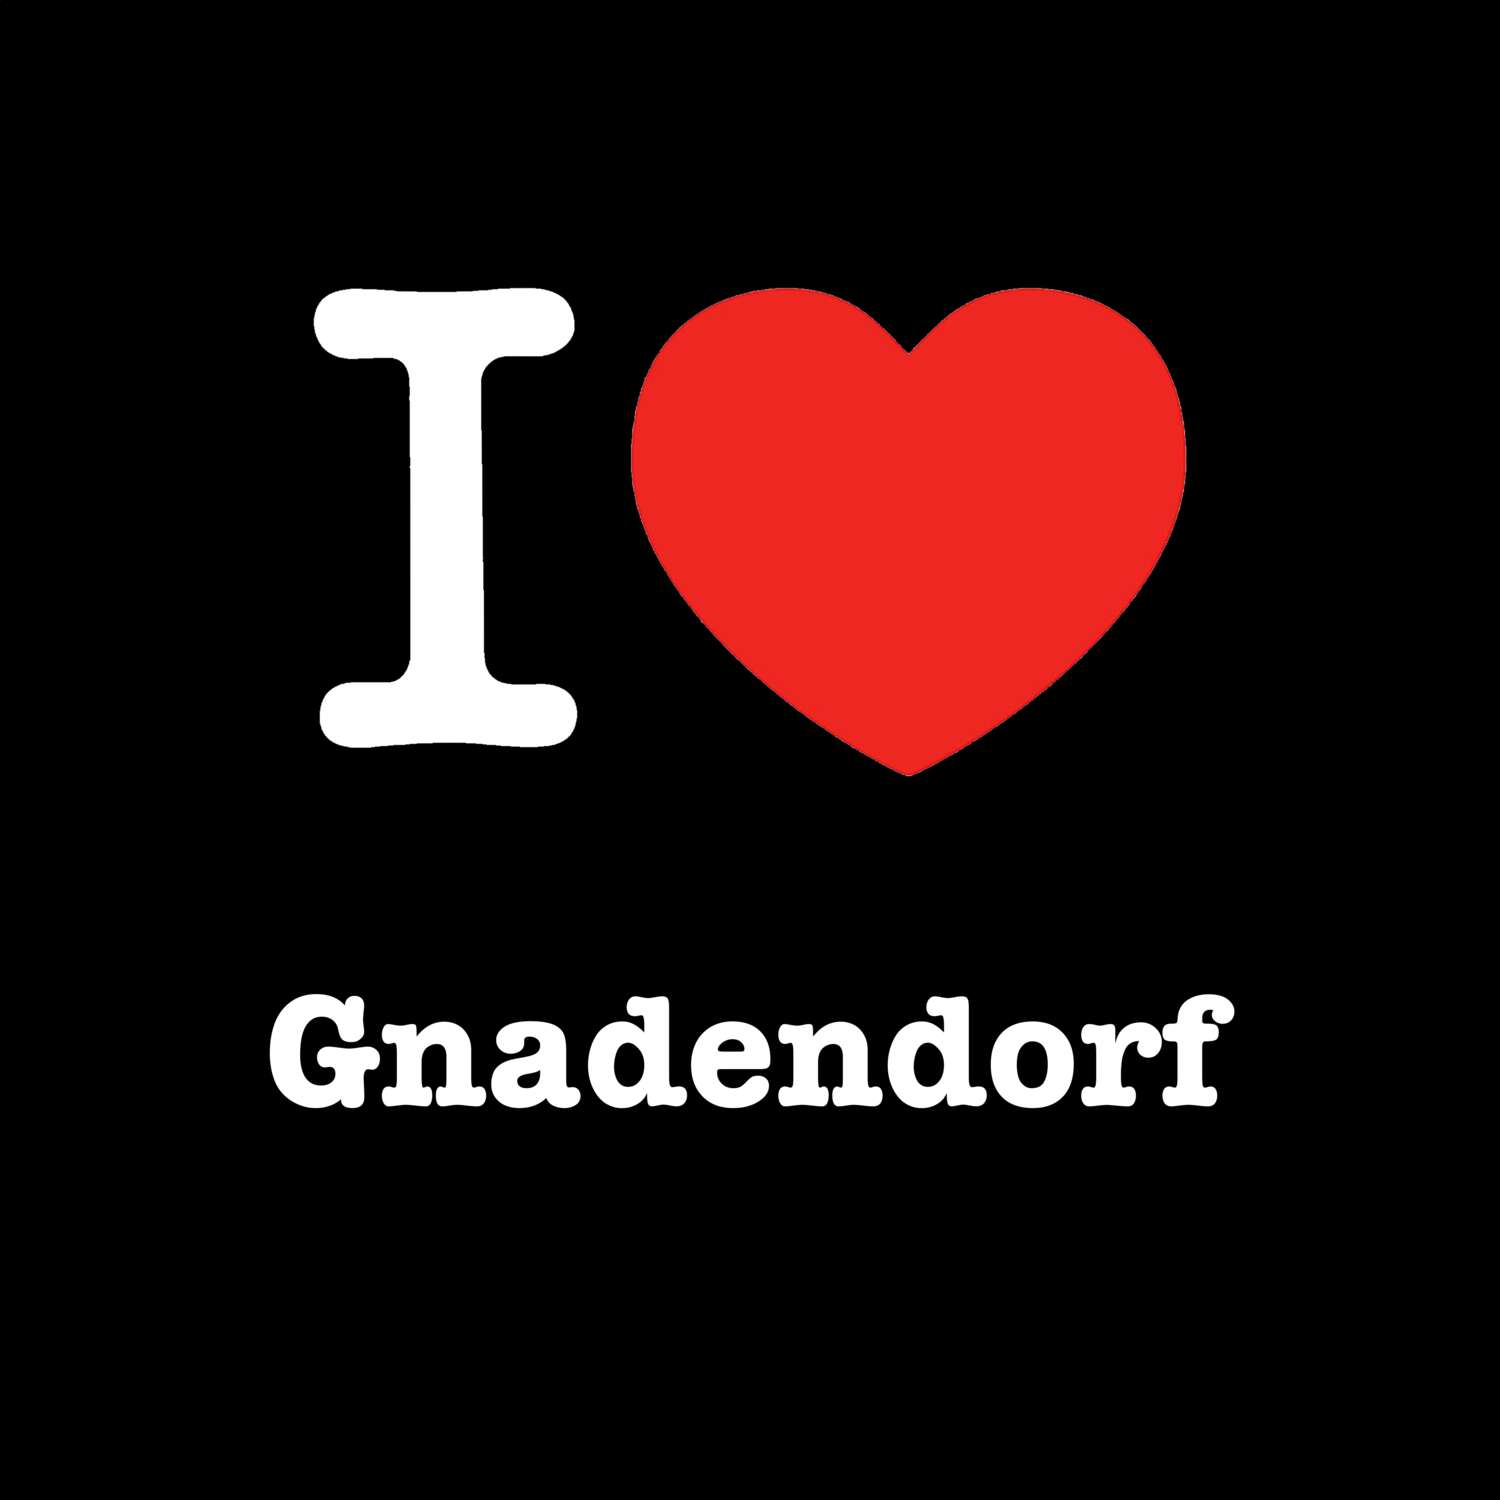 Gnadendorf T-Shirt »I love«